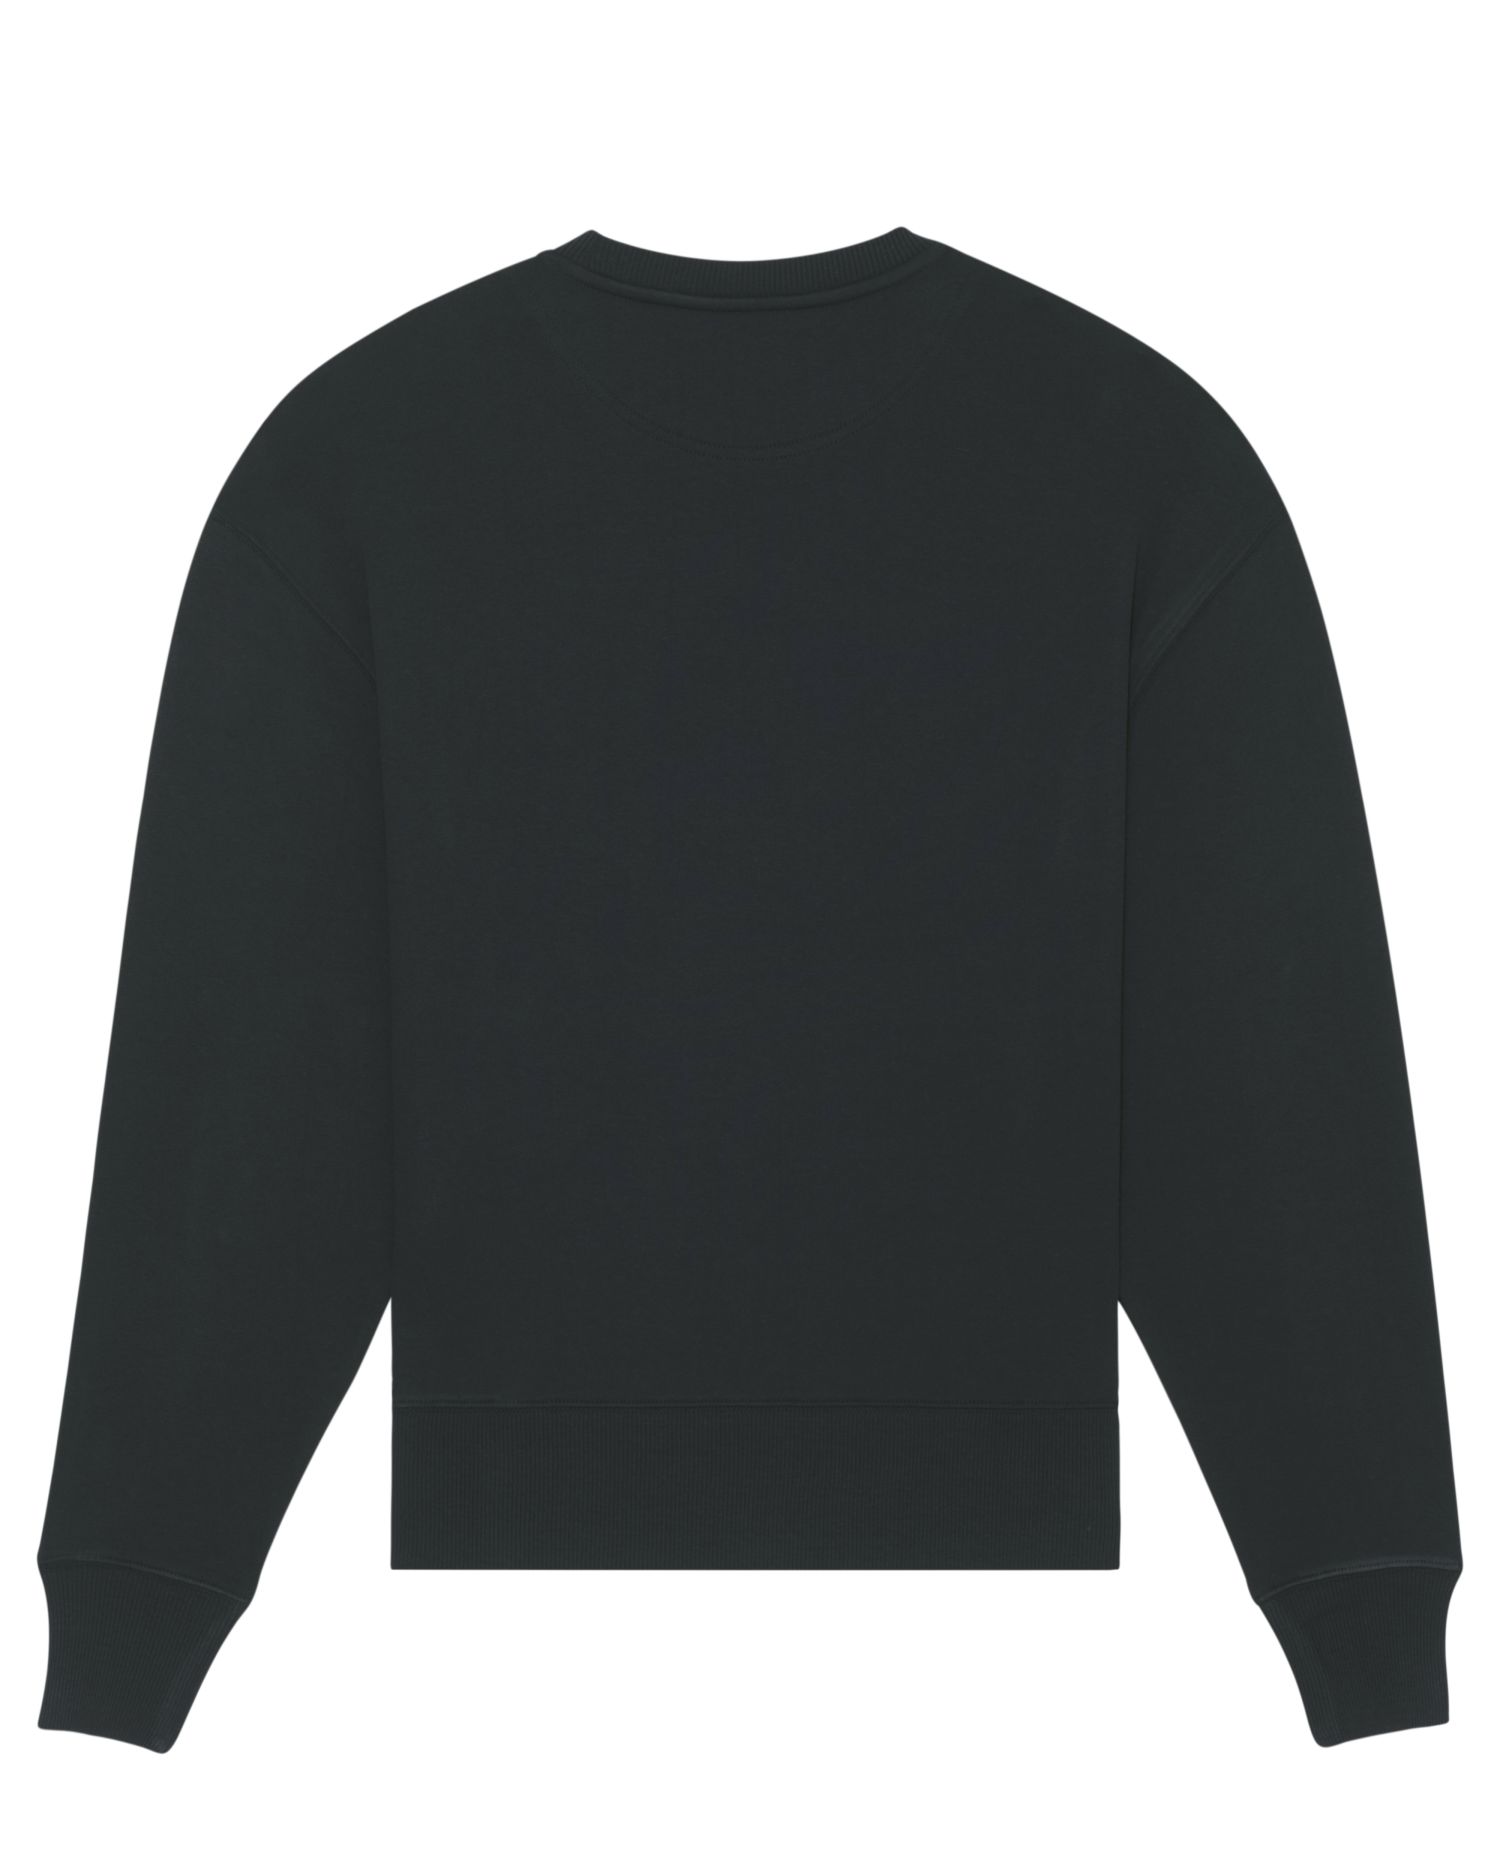 Crew neck sweatshirts Radder in Farbe Black